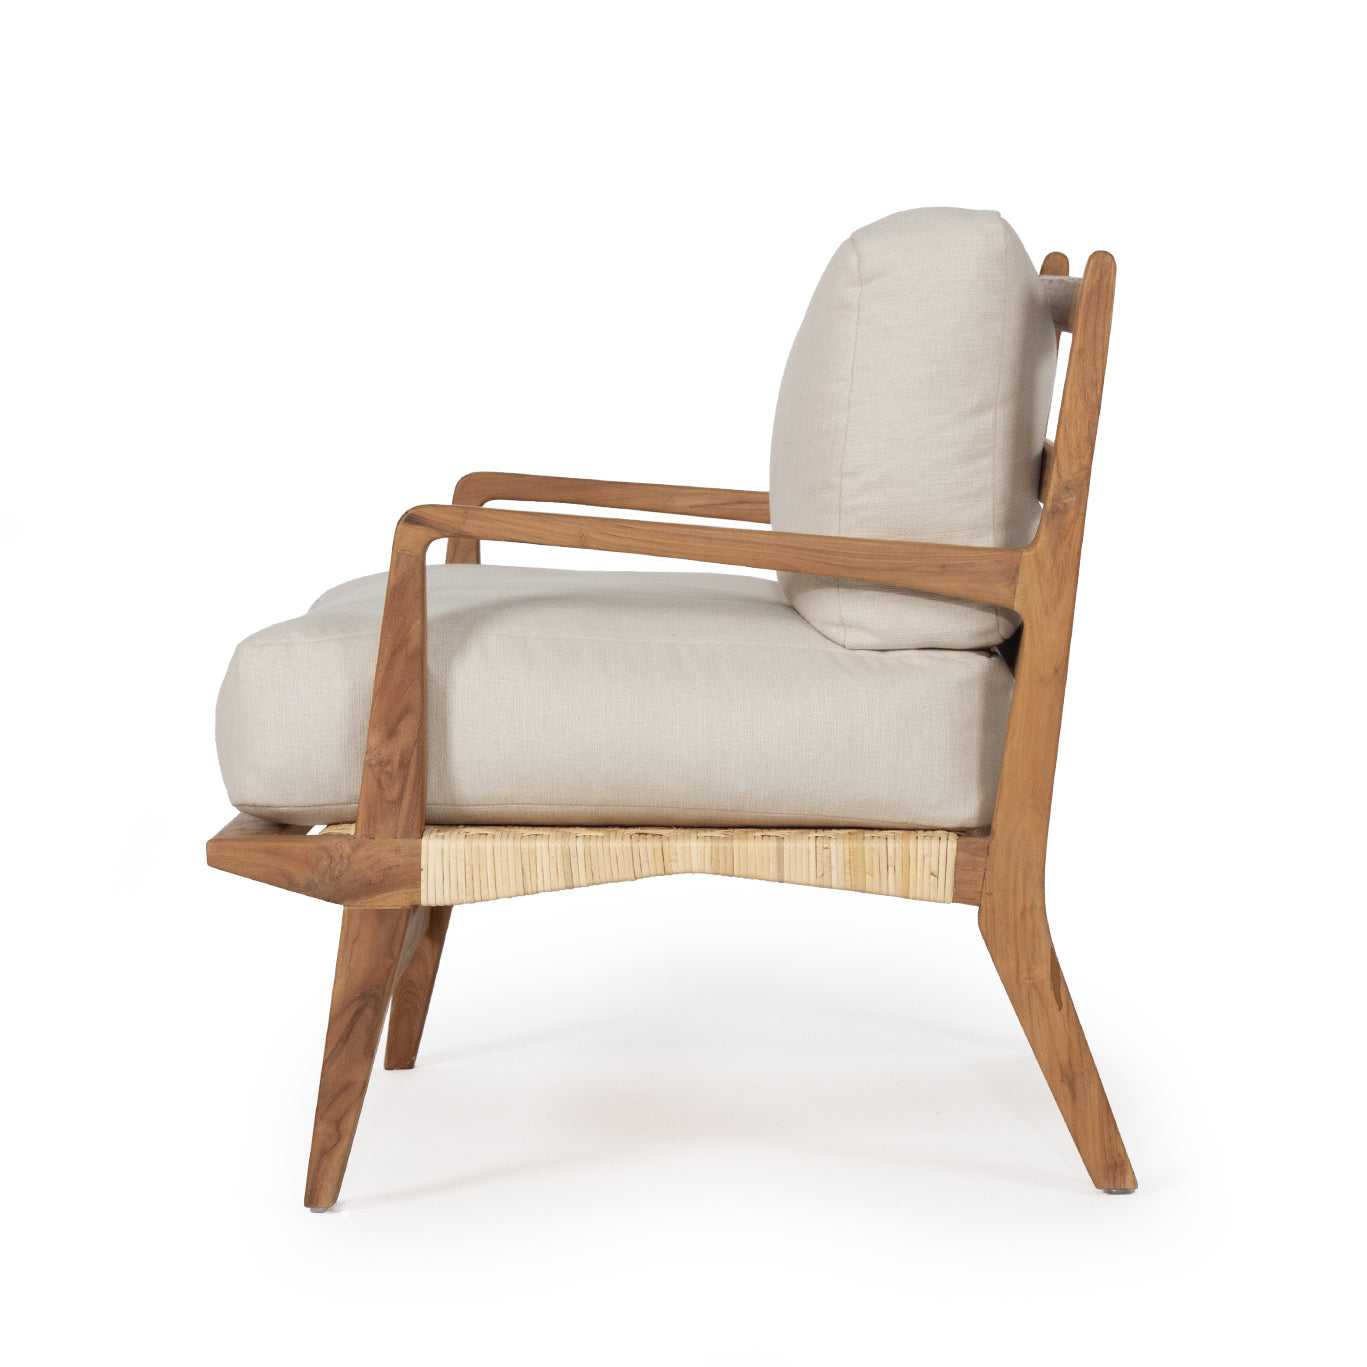 Ollie Upholstered Rattan Armchair - White - Notbrand